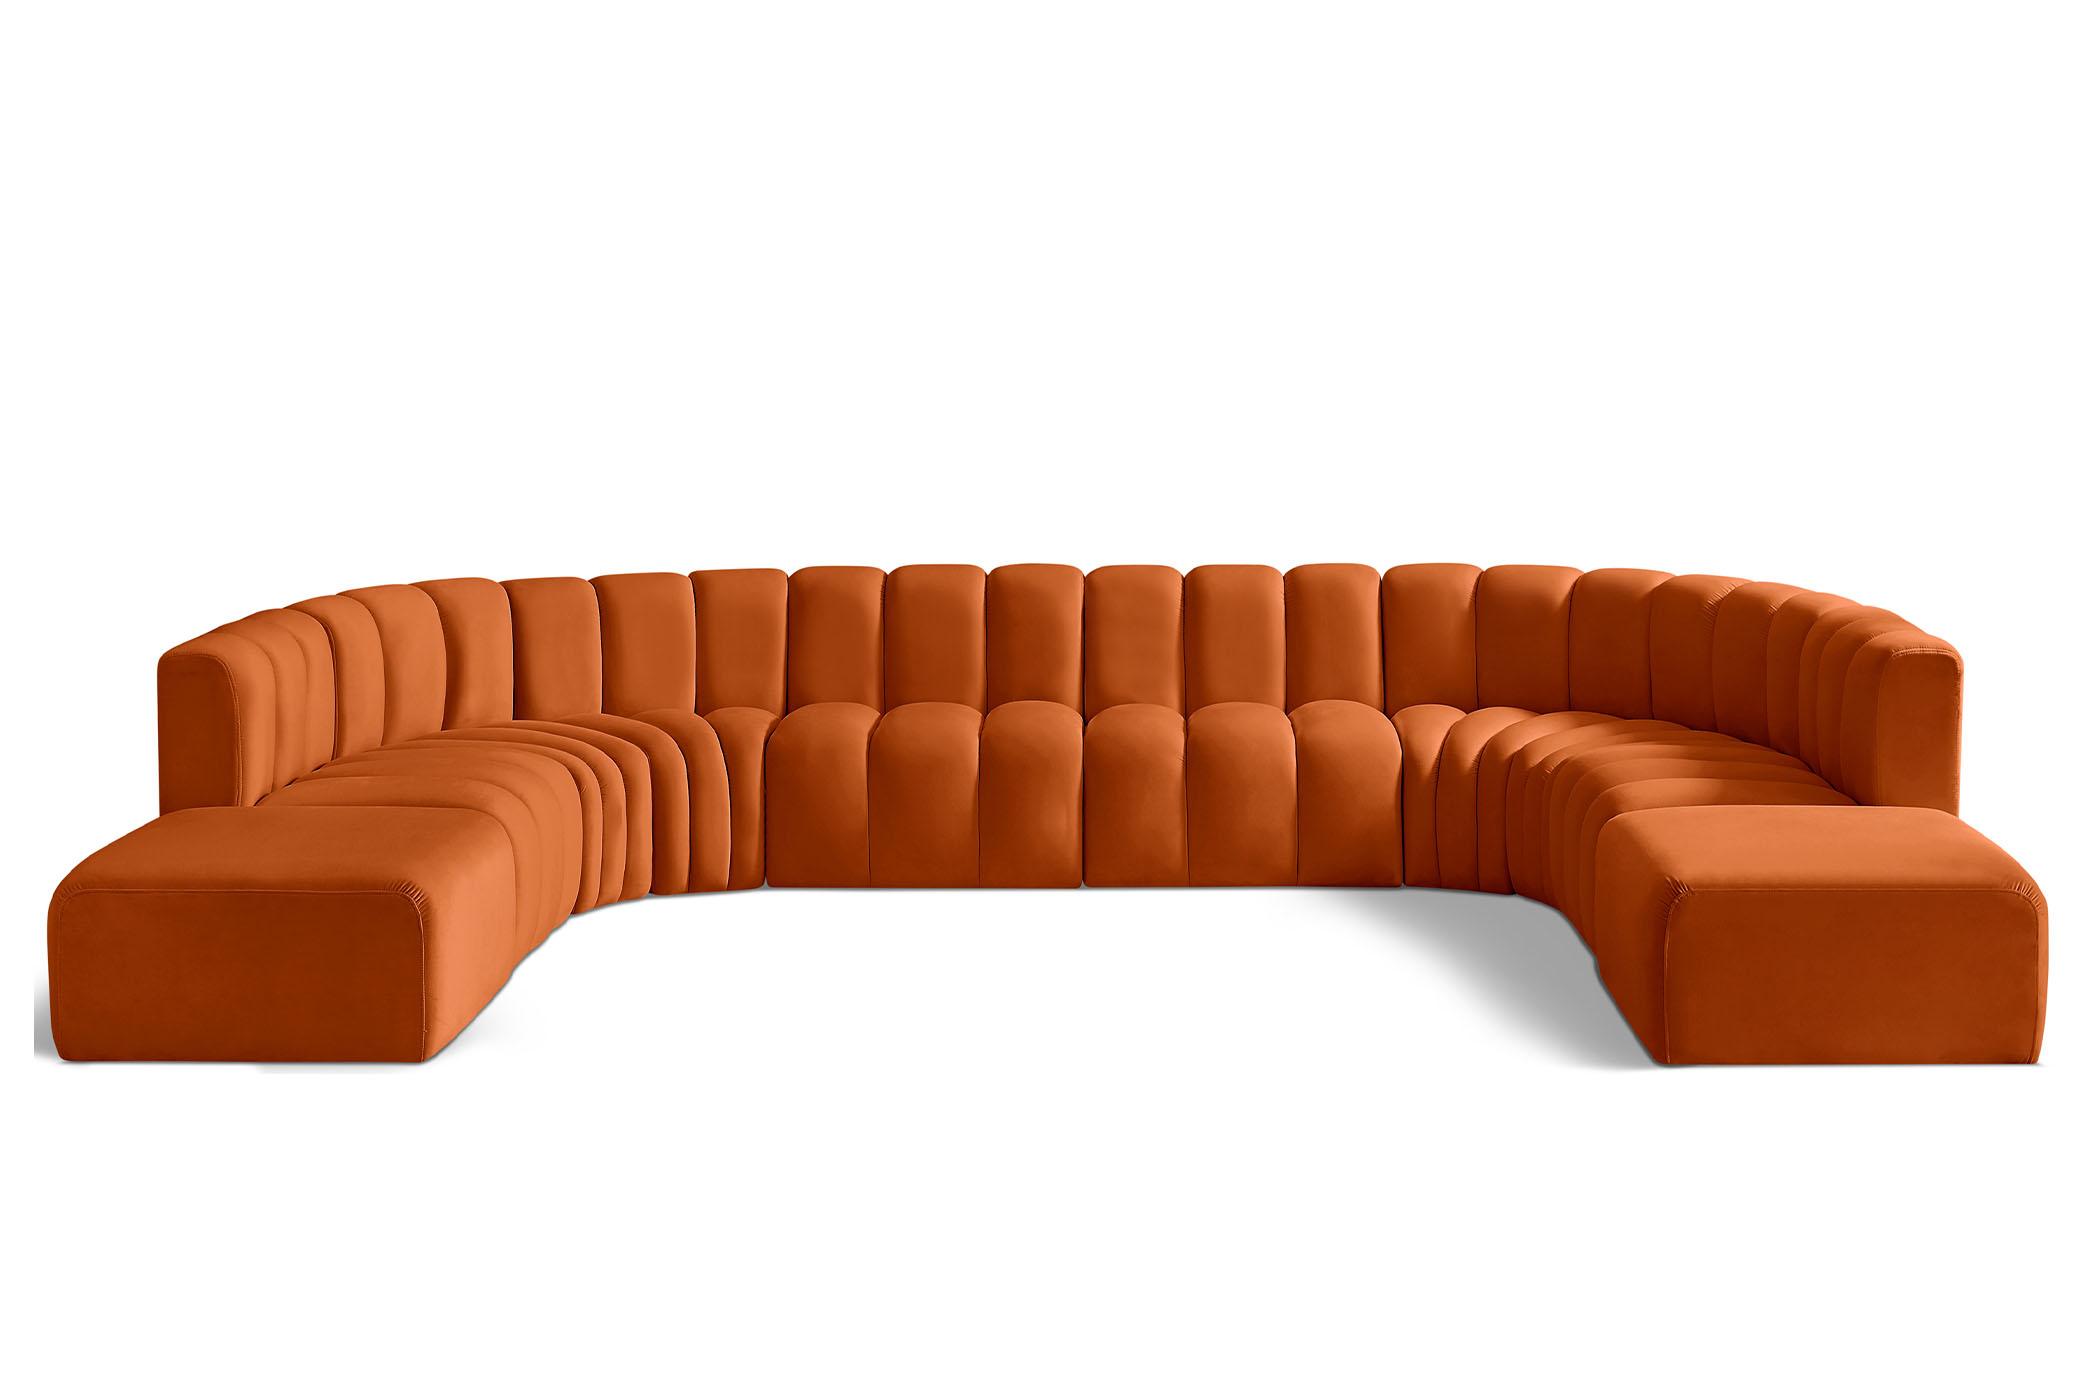 Contemporary, Modern Modular Sectional Sofa ARC 103Cognac-S10A 103Cognac-S10A in Cognac Velvet